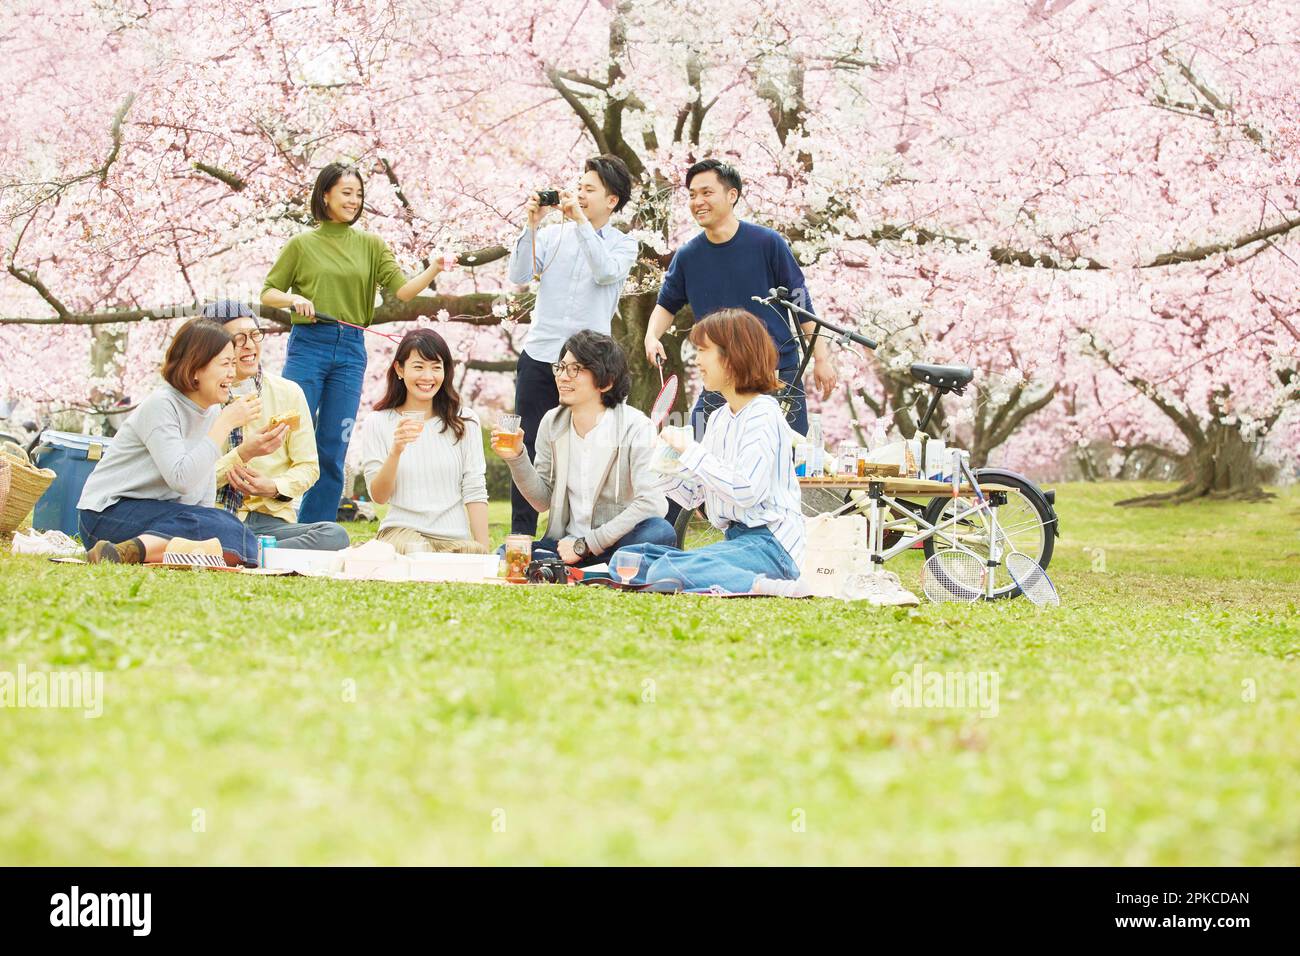 8 uomini e donne che osservano i fiori di ciliegio Foto Stock